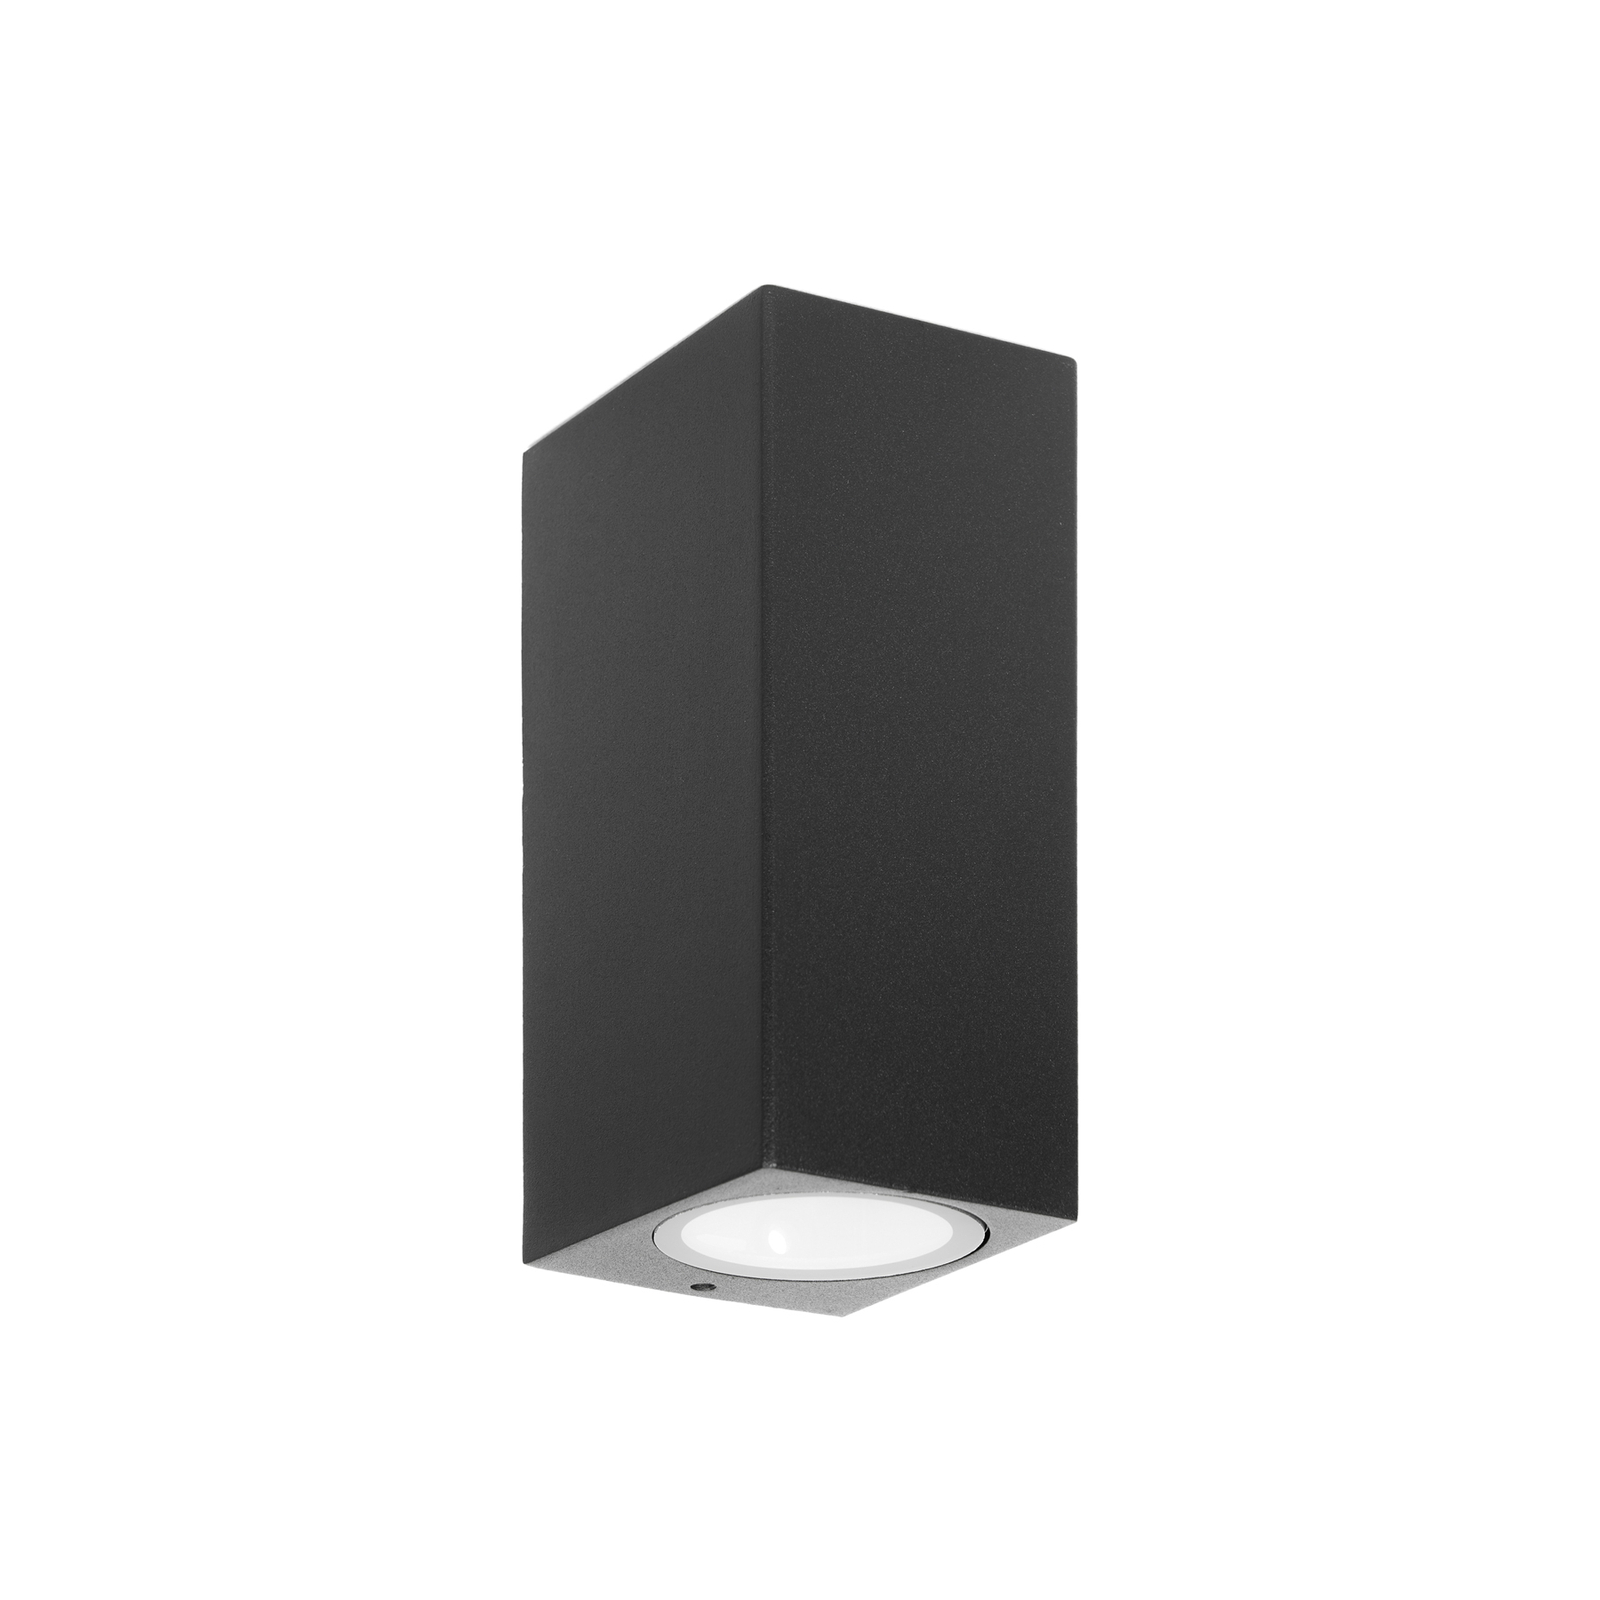 Prios kültéri fali lámpa Tetje, fekete, szögletes, 16 cm-es, szögletes